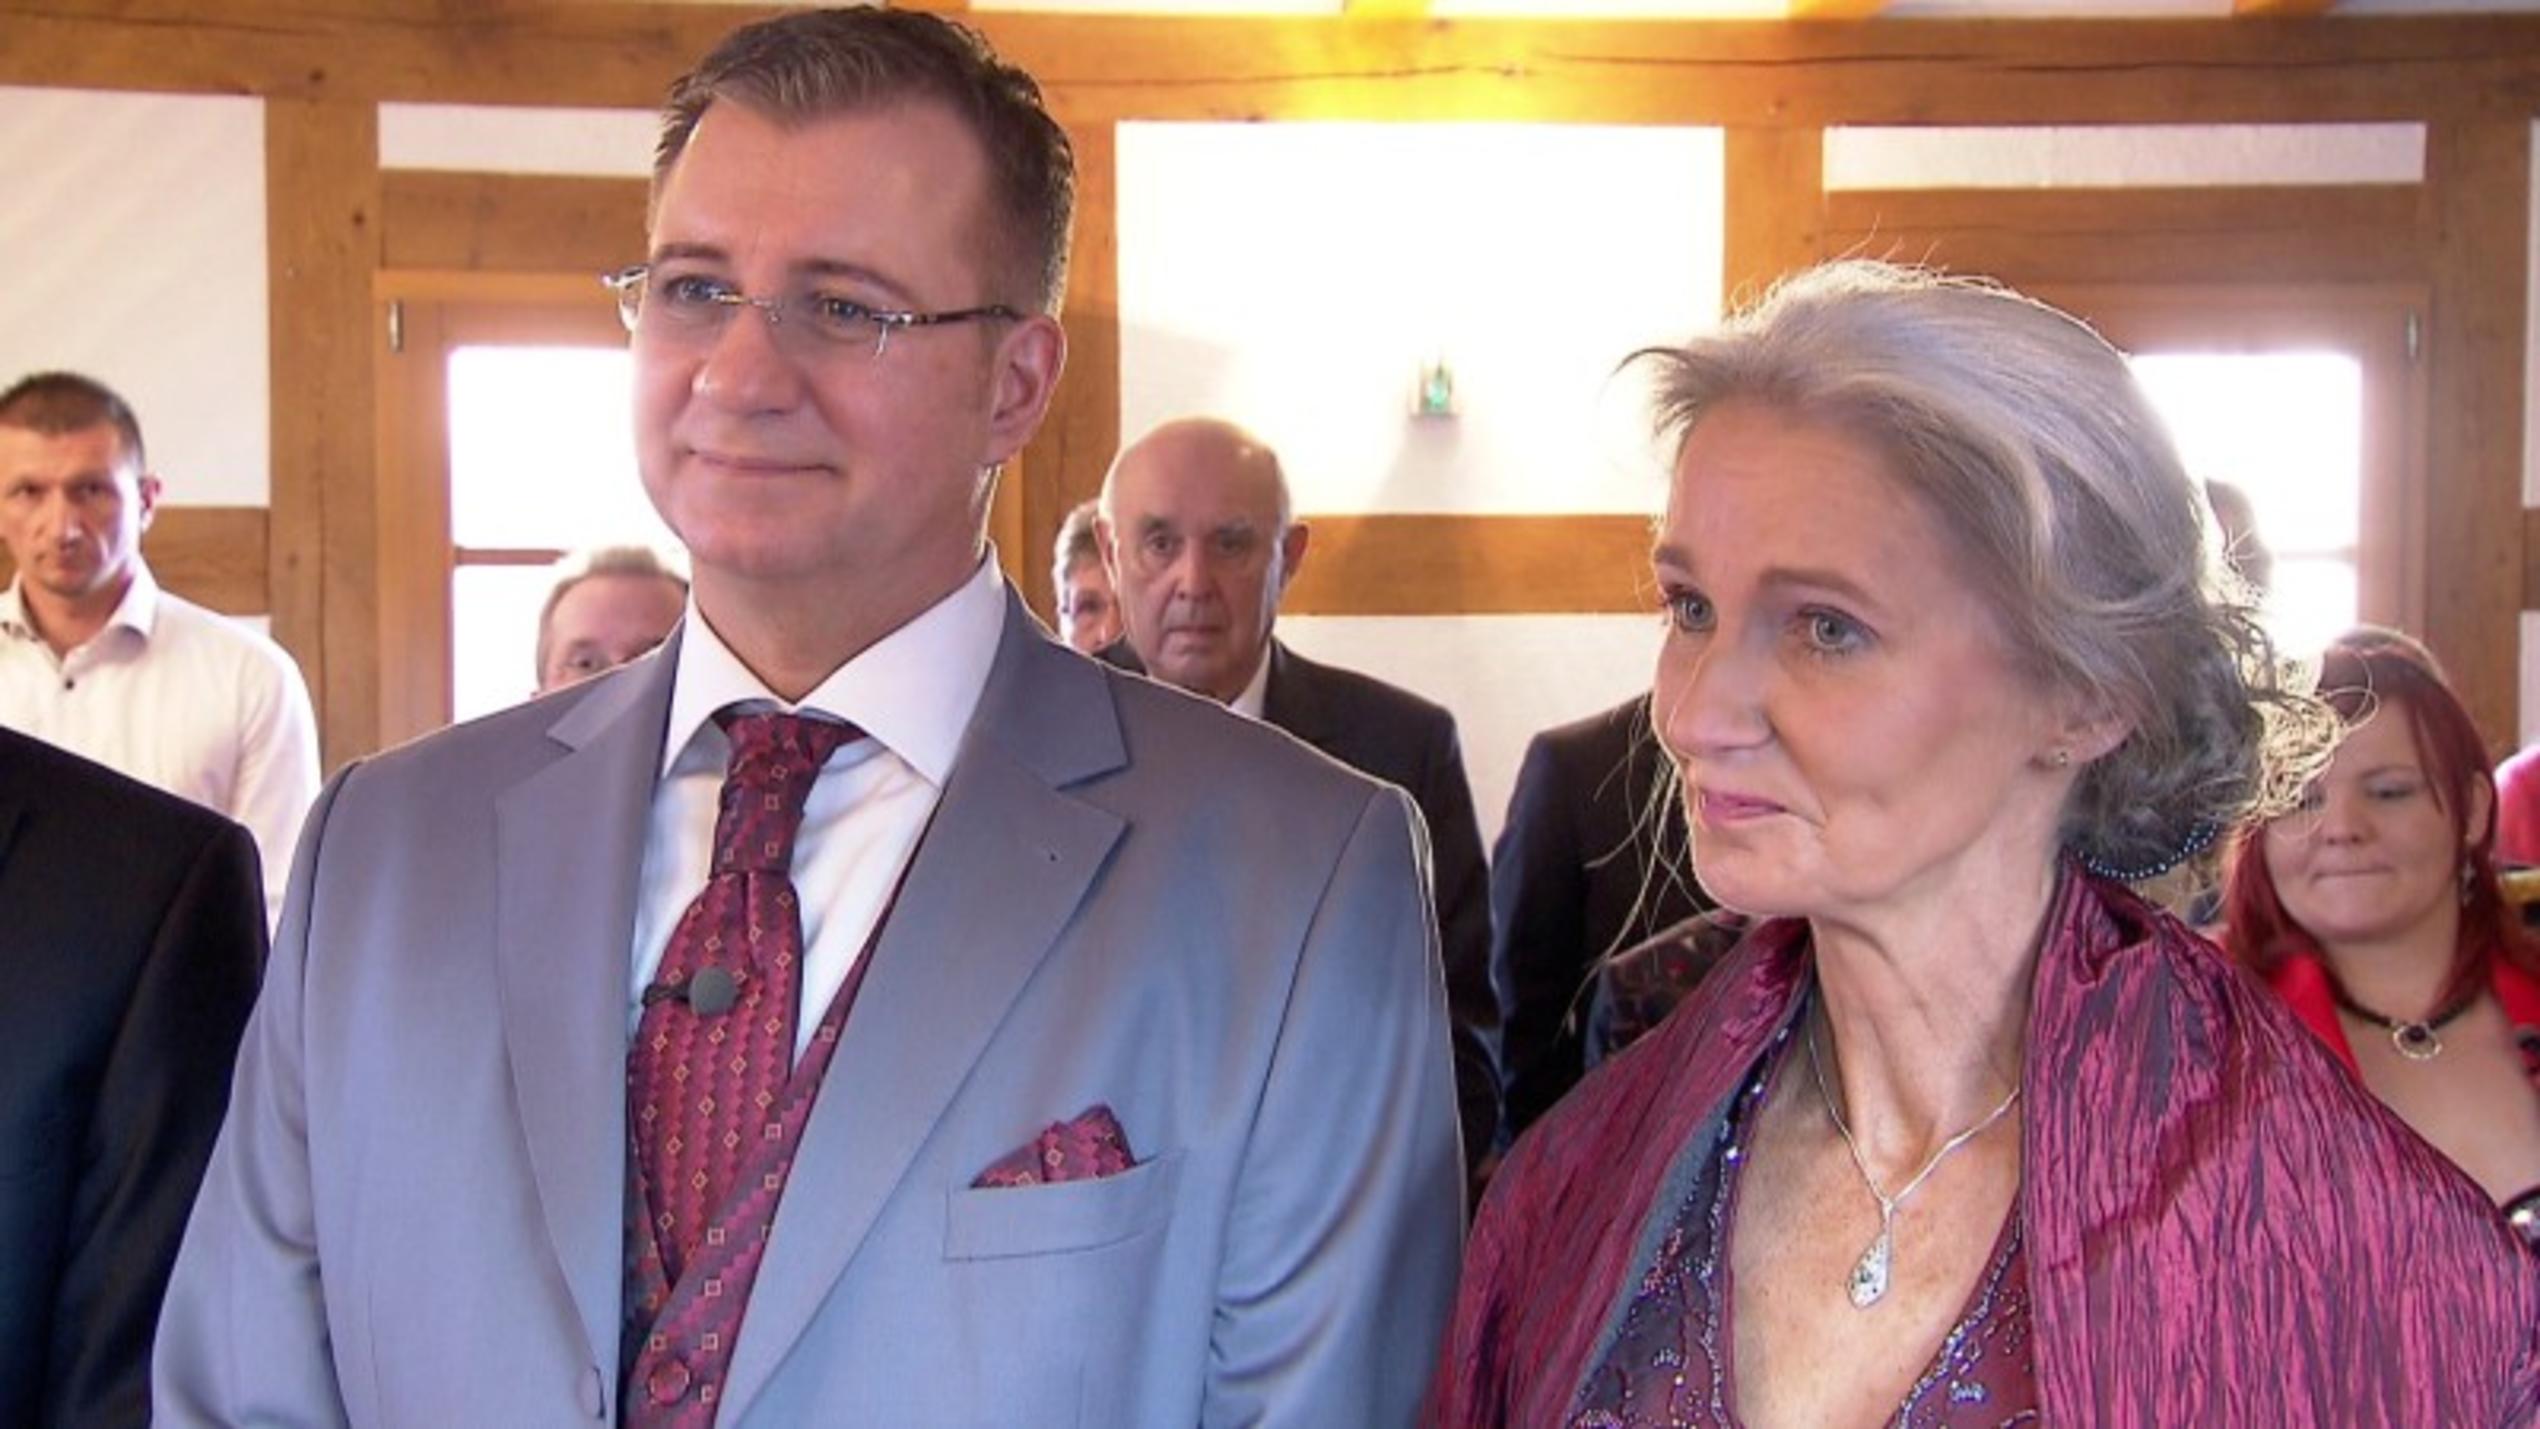 Friederike und Jörg heiraten nach 35 Jahren